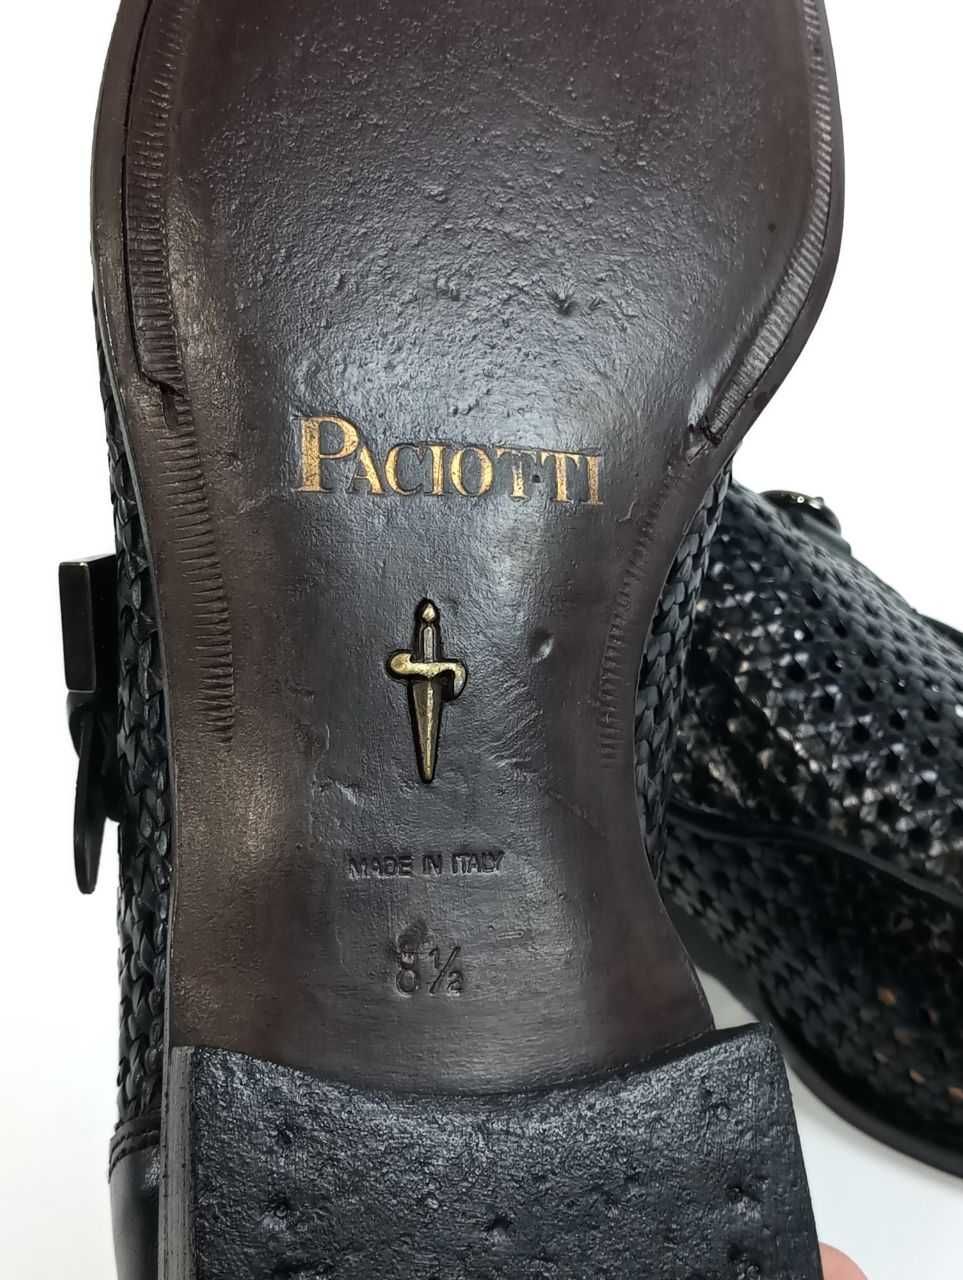 Кожаные летние туфли Cesare Paciotti Оригинал